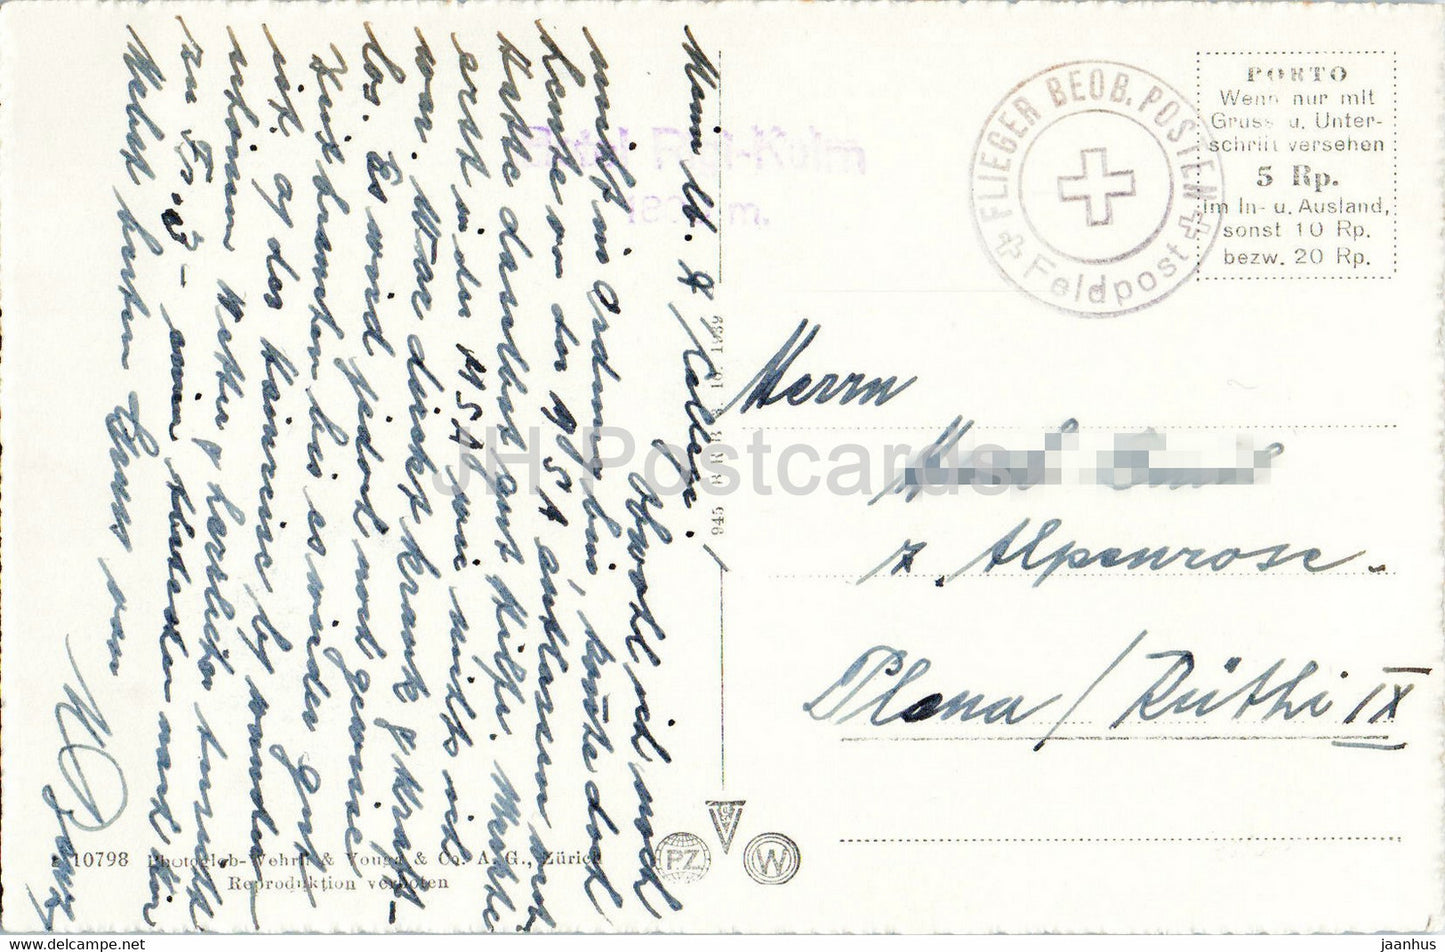 Rigi Staffel und Kulm mit Pilatus - Zugersee - Zug - Feldpost - Militärpost - alte Postkarte - Schweiz - gebraucht